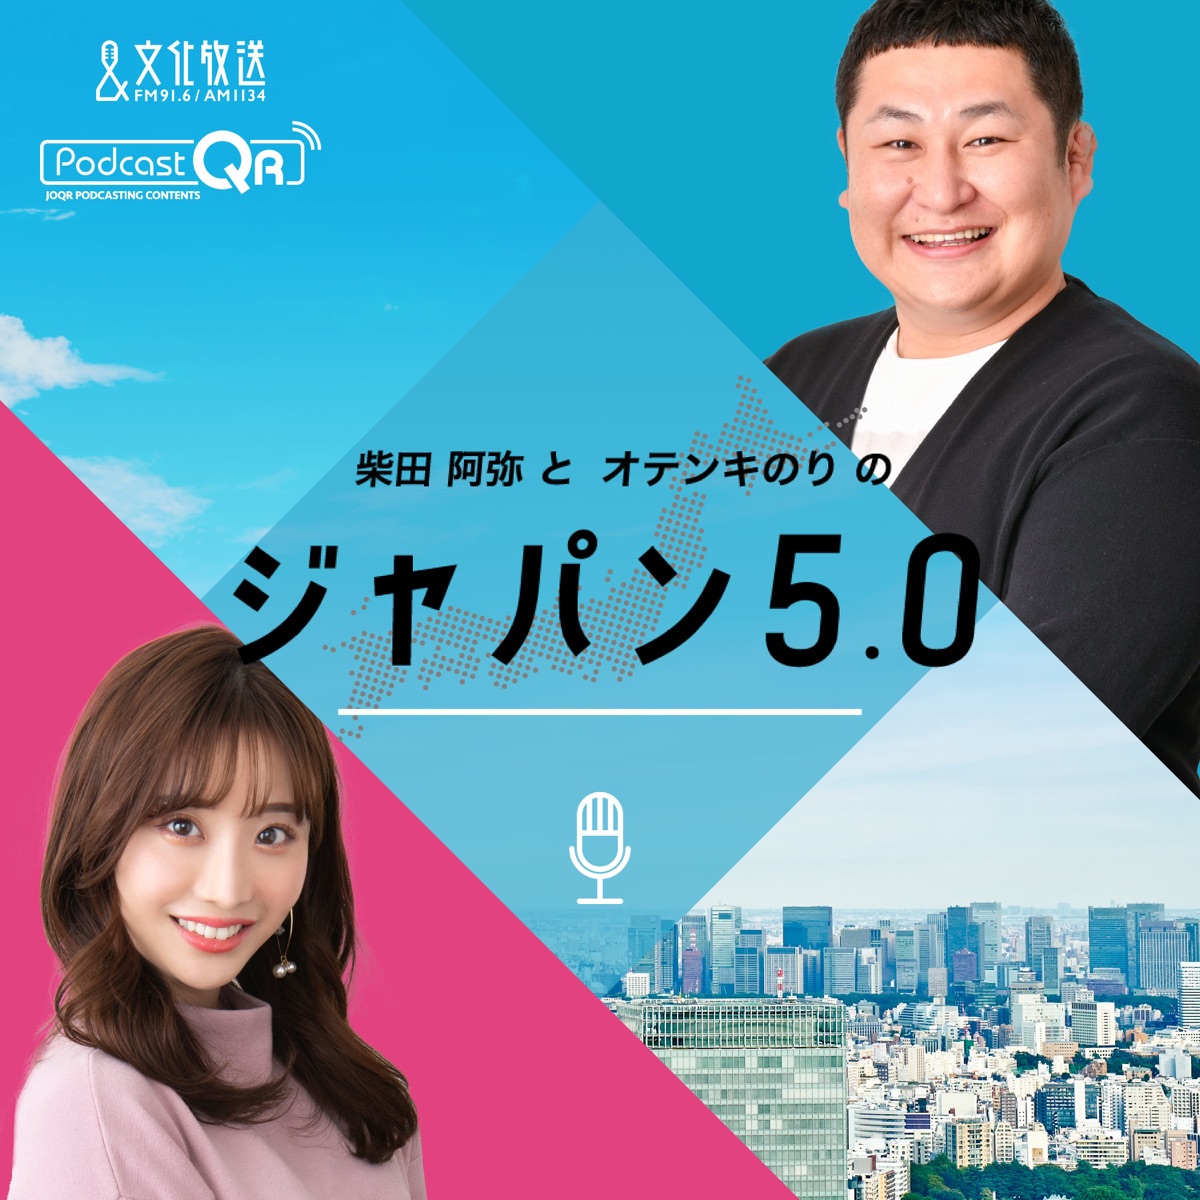 柴田阿弥とオテンキのりのジャパン5 0 Podcast Podtail